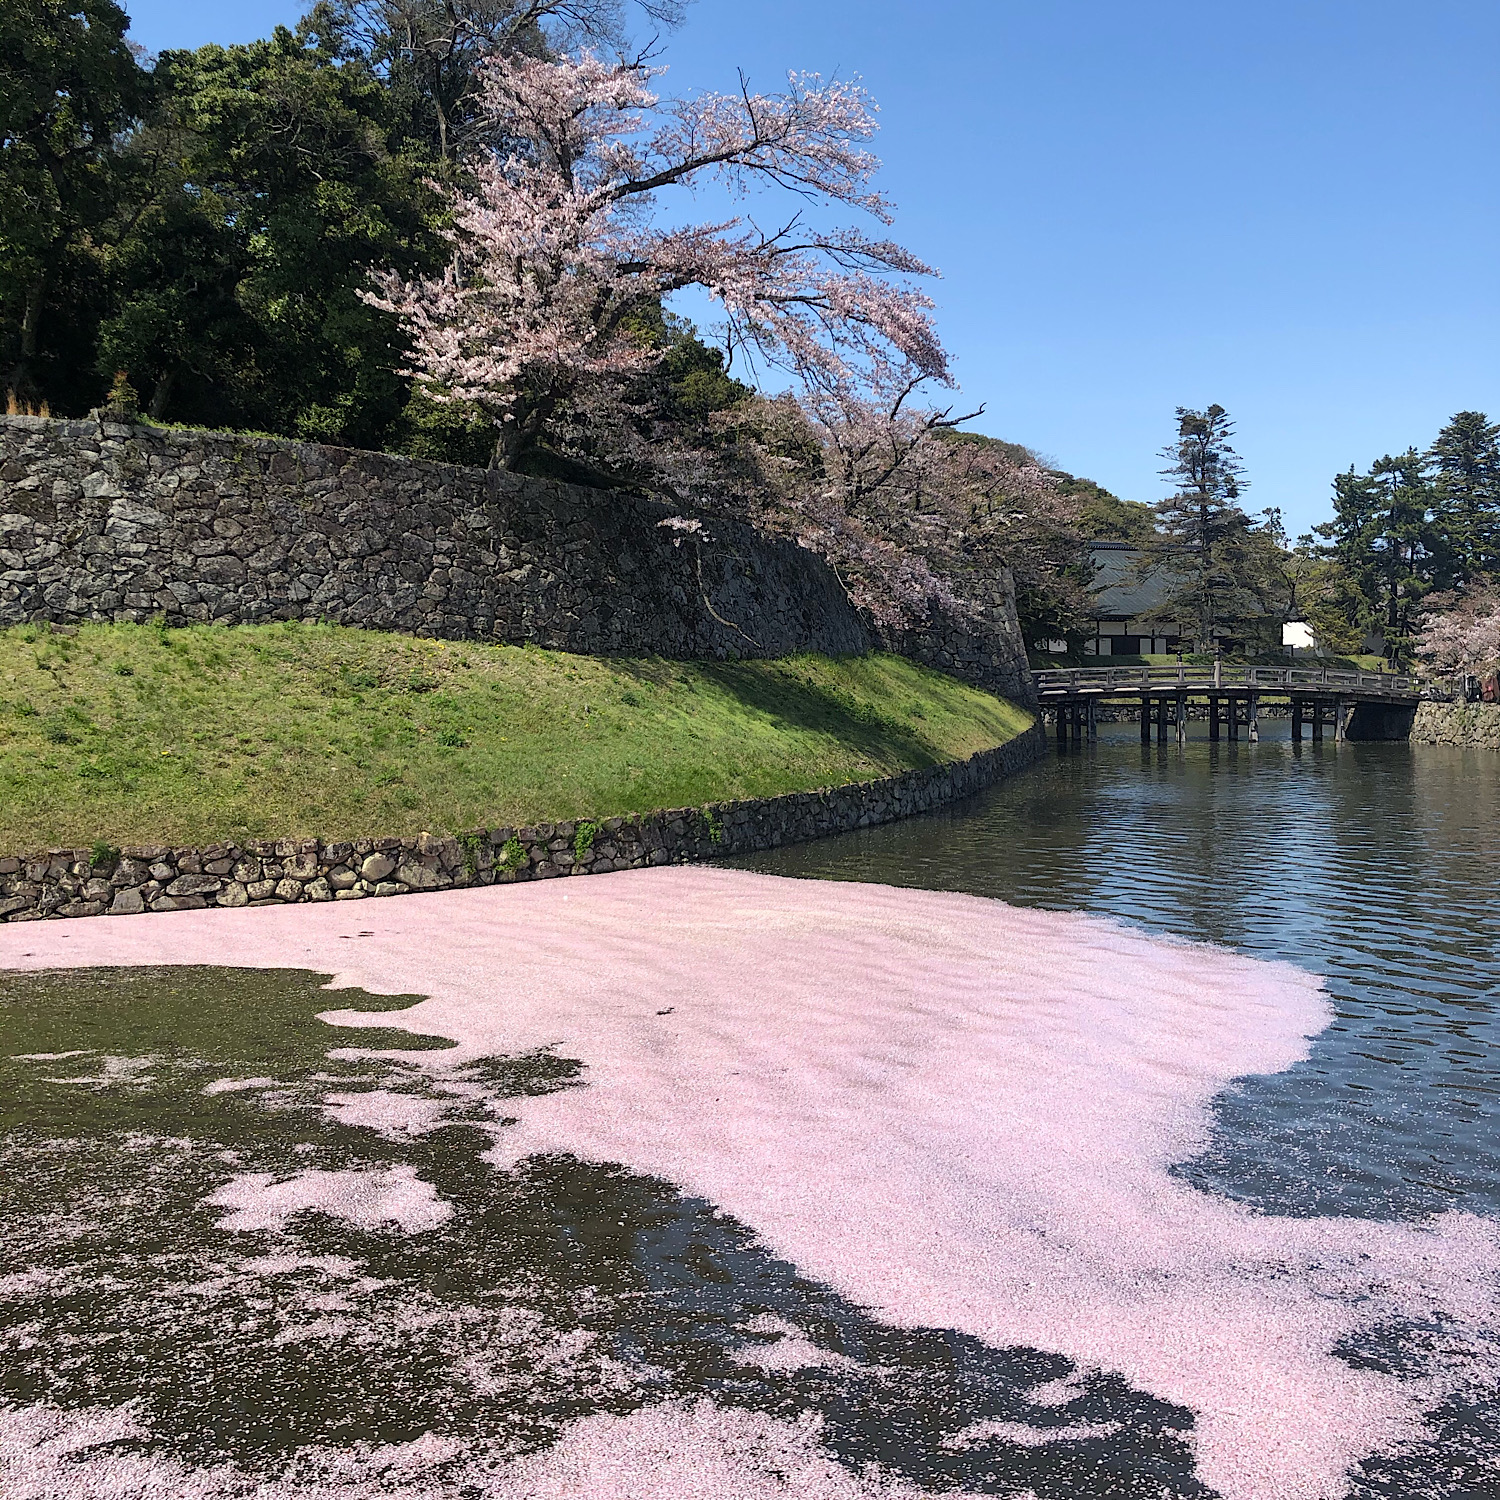 川面に流れる桜の花びら。